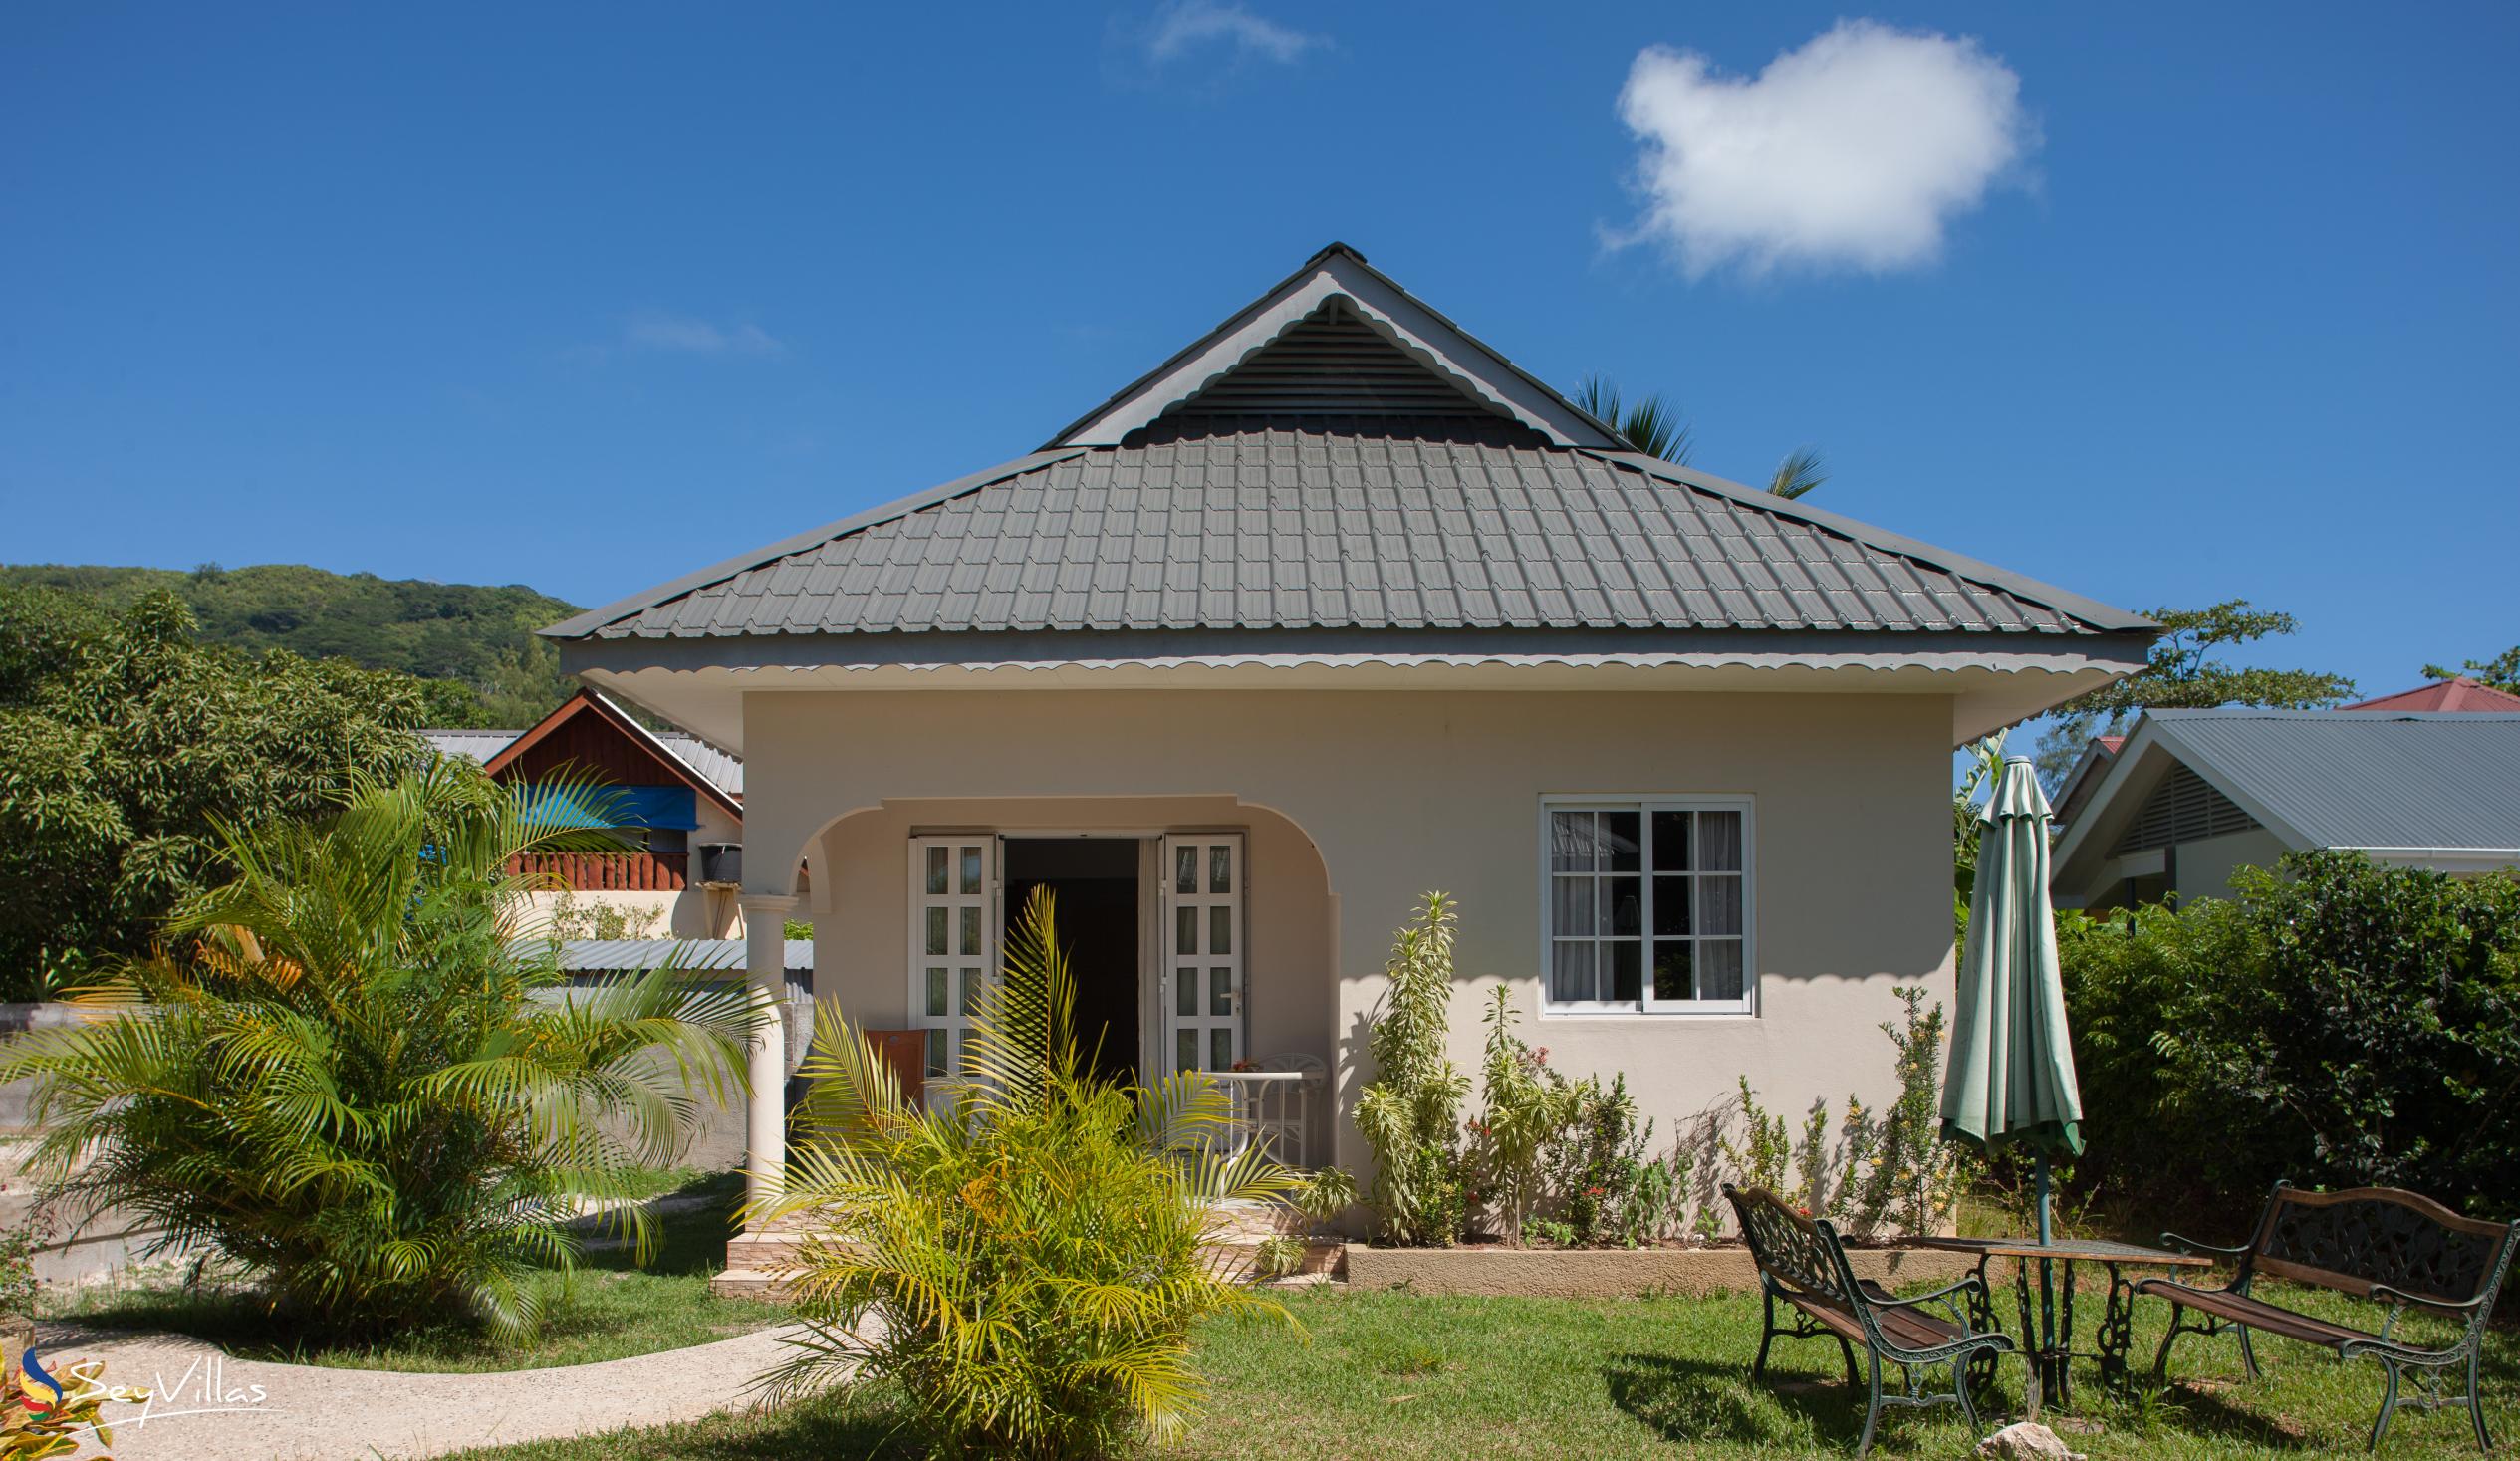 Foto 2: Villa Source D'Argent - Aussenbereich - La Digue (Seychellen)